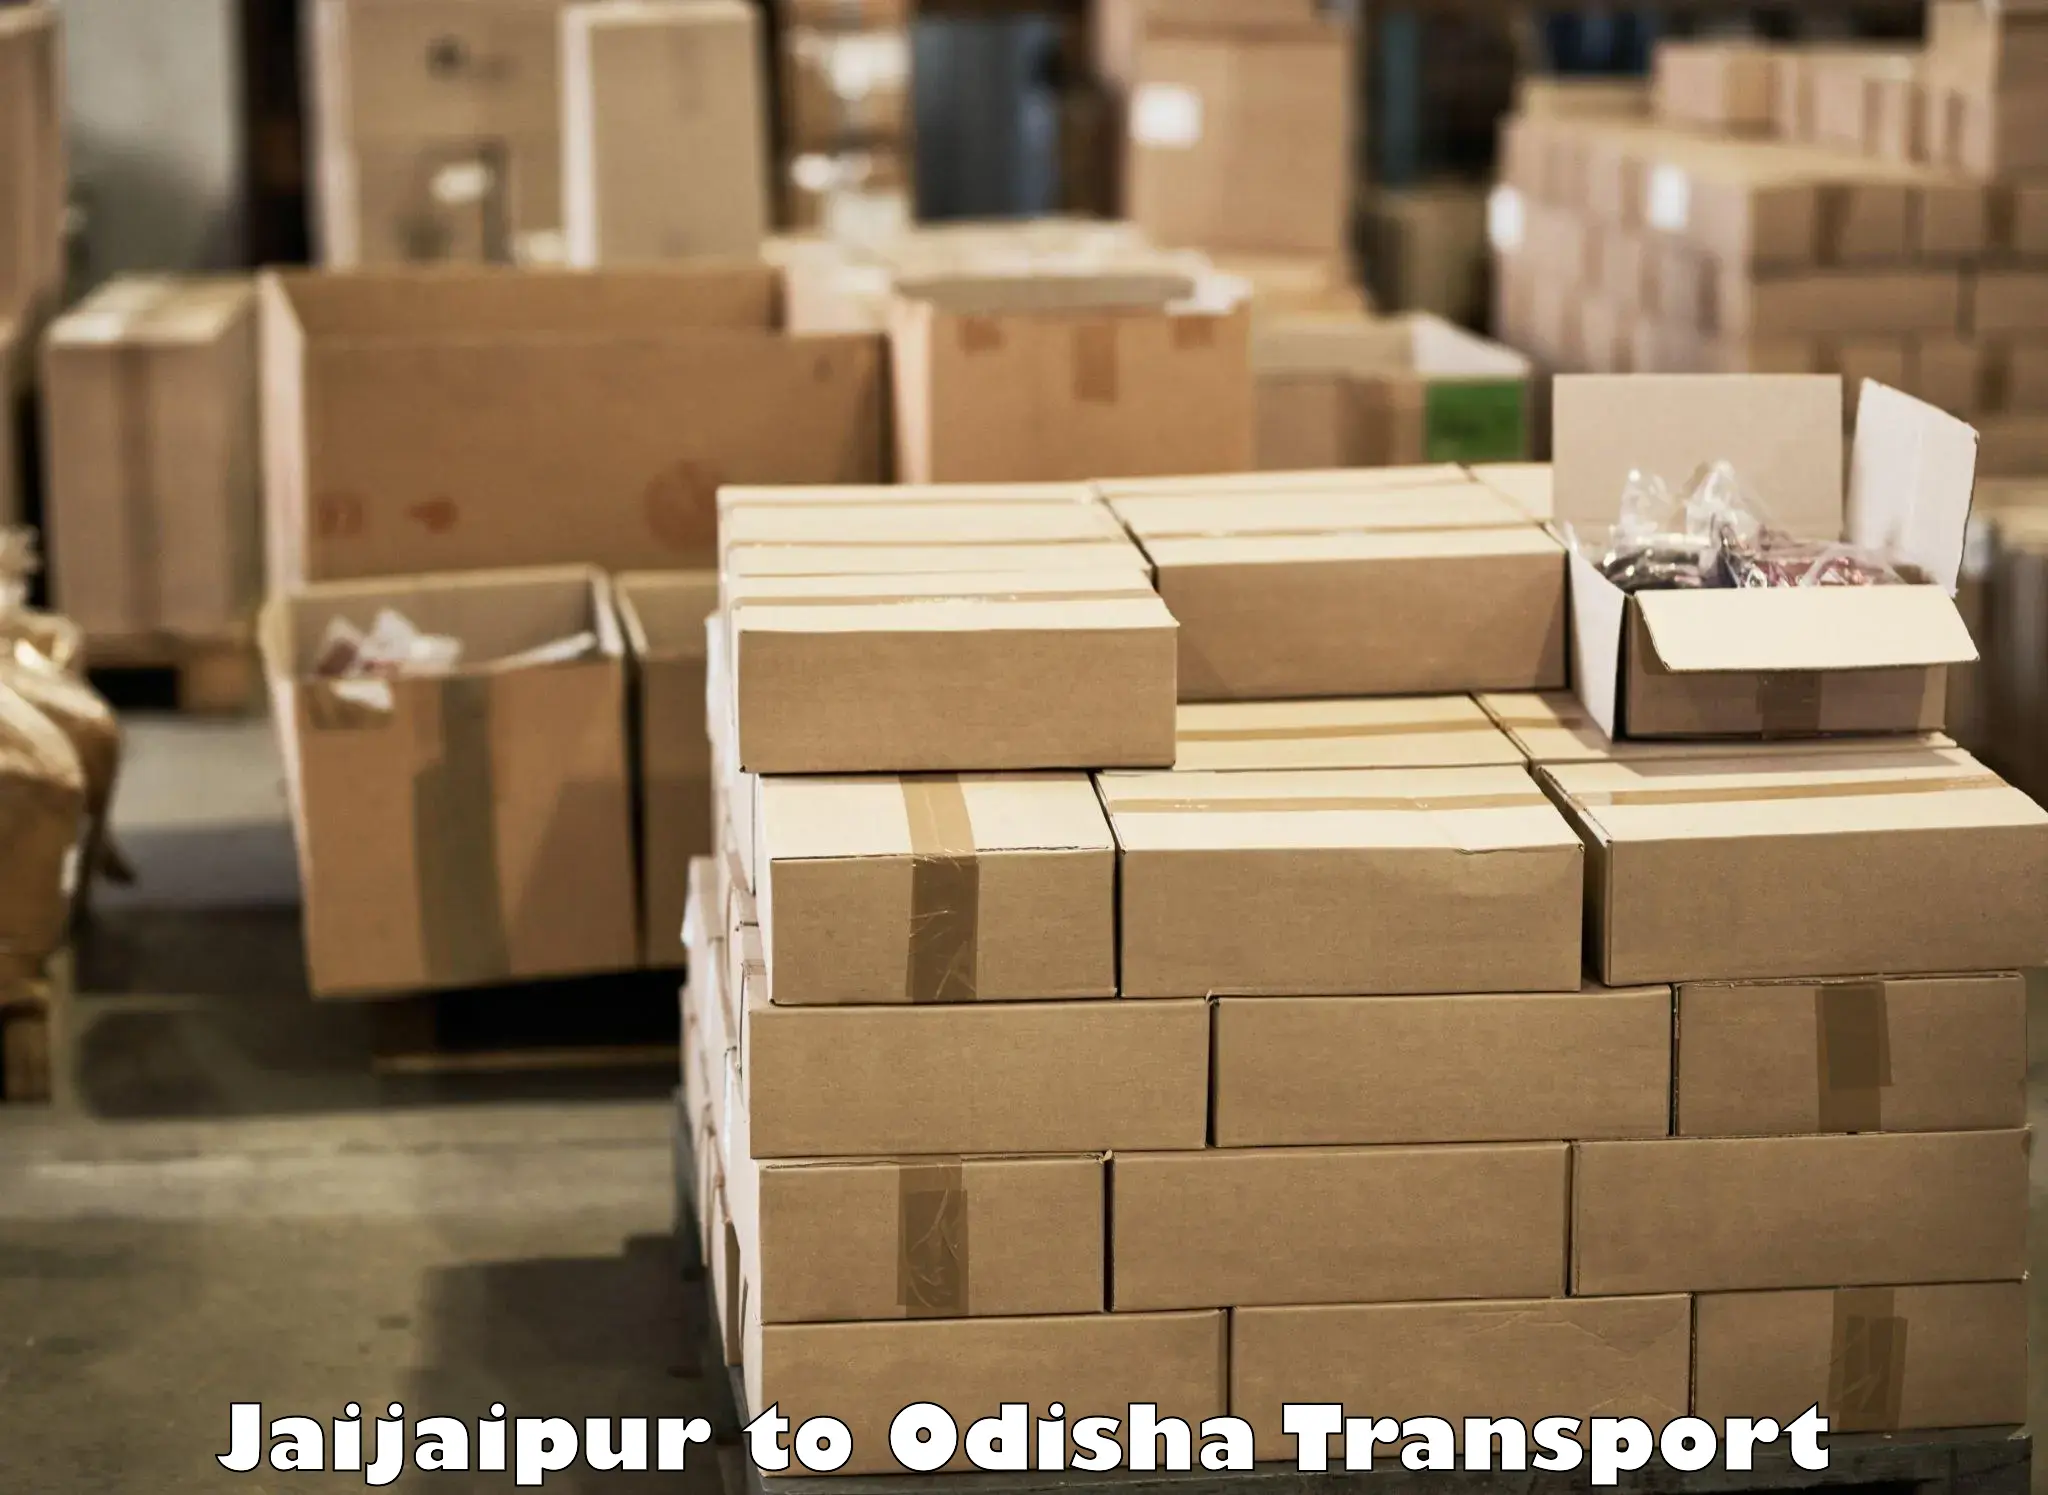 Vehicle parcel service Jaijaipur to Parlakhemundi